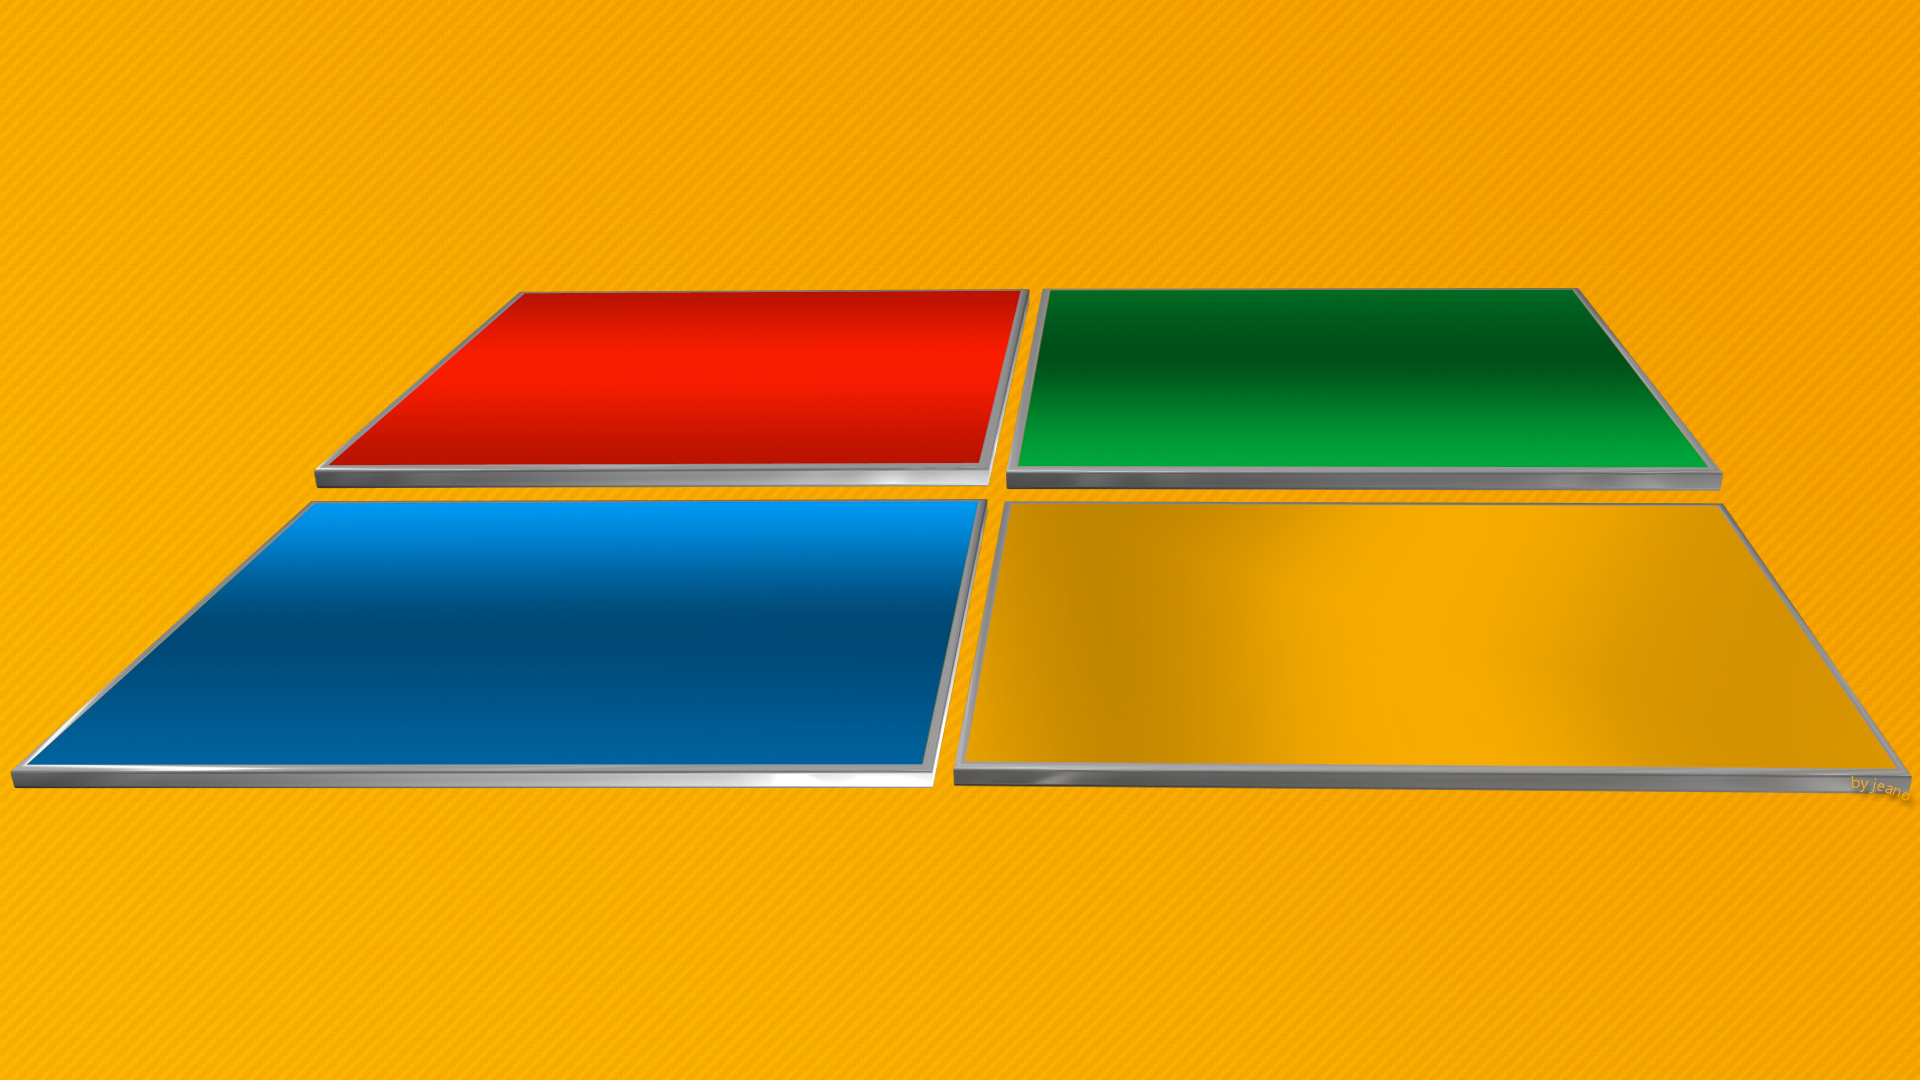 Hình nền Windows 8.1 là sự kết hợp hoàn hảo giữa hiệu suất mạnh mẽ và thiết kế tuyệt đẹp. Với hình nền này, bạn sẽ cảm nhận được sự thăng hoa của công nghệ và nghệ thuật. Nào, hãy cùng xem trực tiếp hình nền Windows 8.1 để được đắm mình trong thế giới tuyệt vời này.